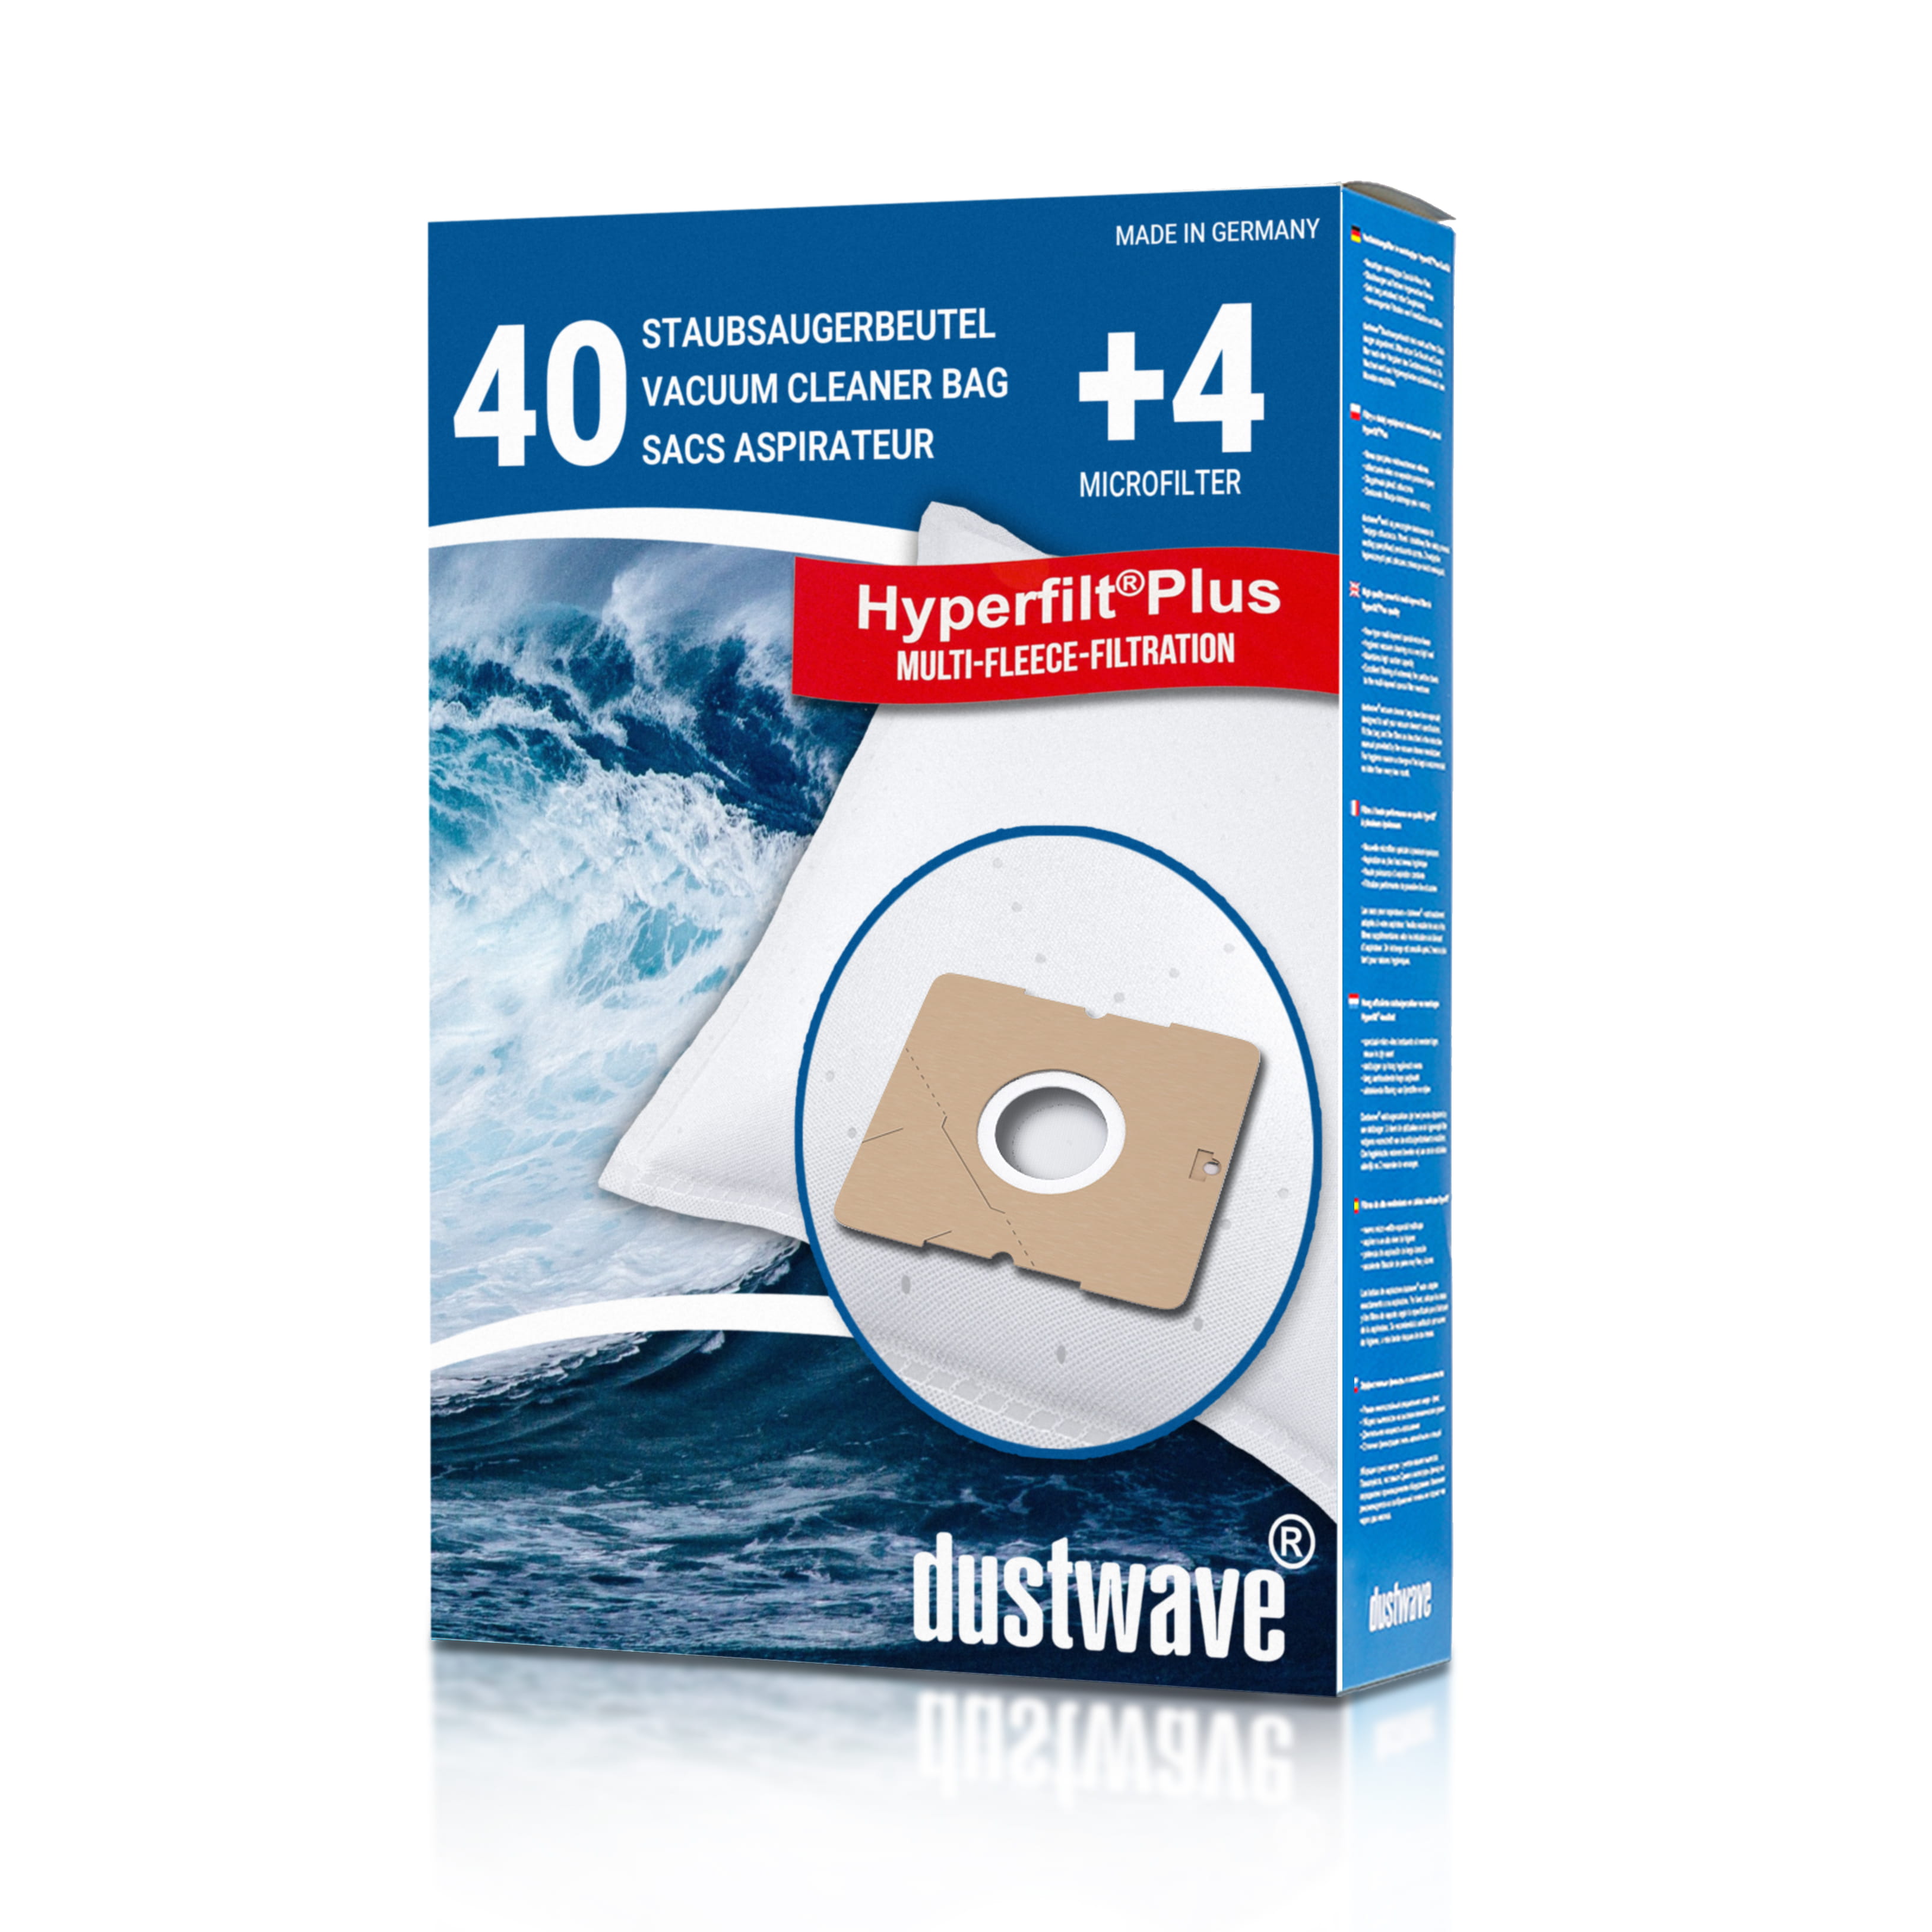 Dustwave® 40 Staubsaugerbeutel für Blue Sky VC 4201 / VC4201 - hocheffizient, mehrlagiges Mikrovlies mit Hygieneverschluss - Made in Germany